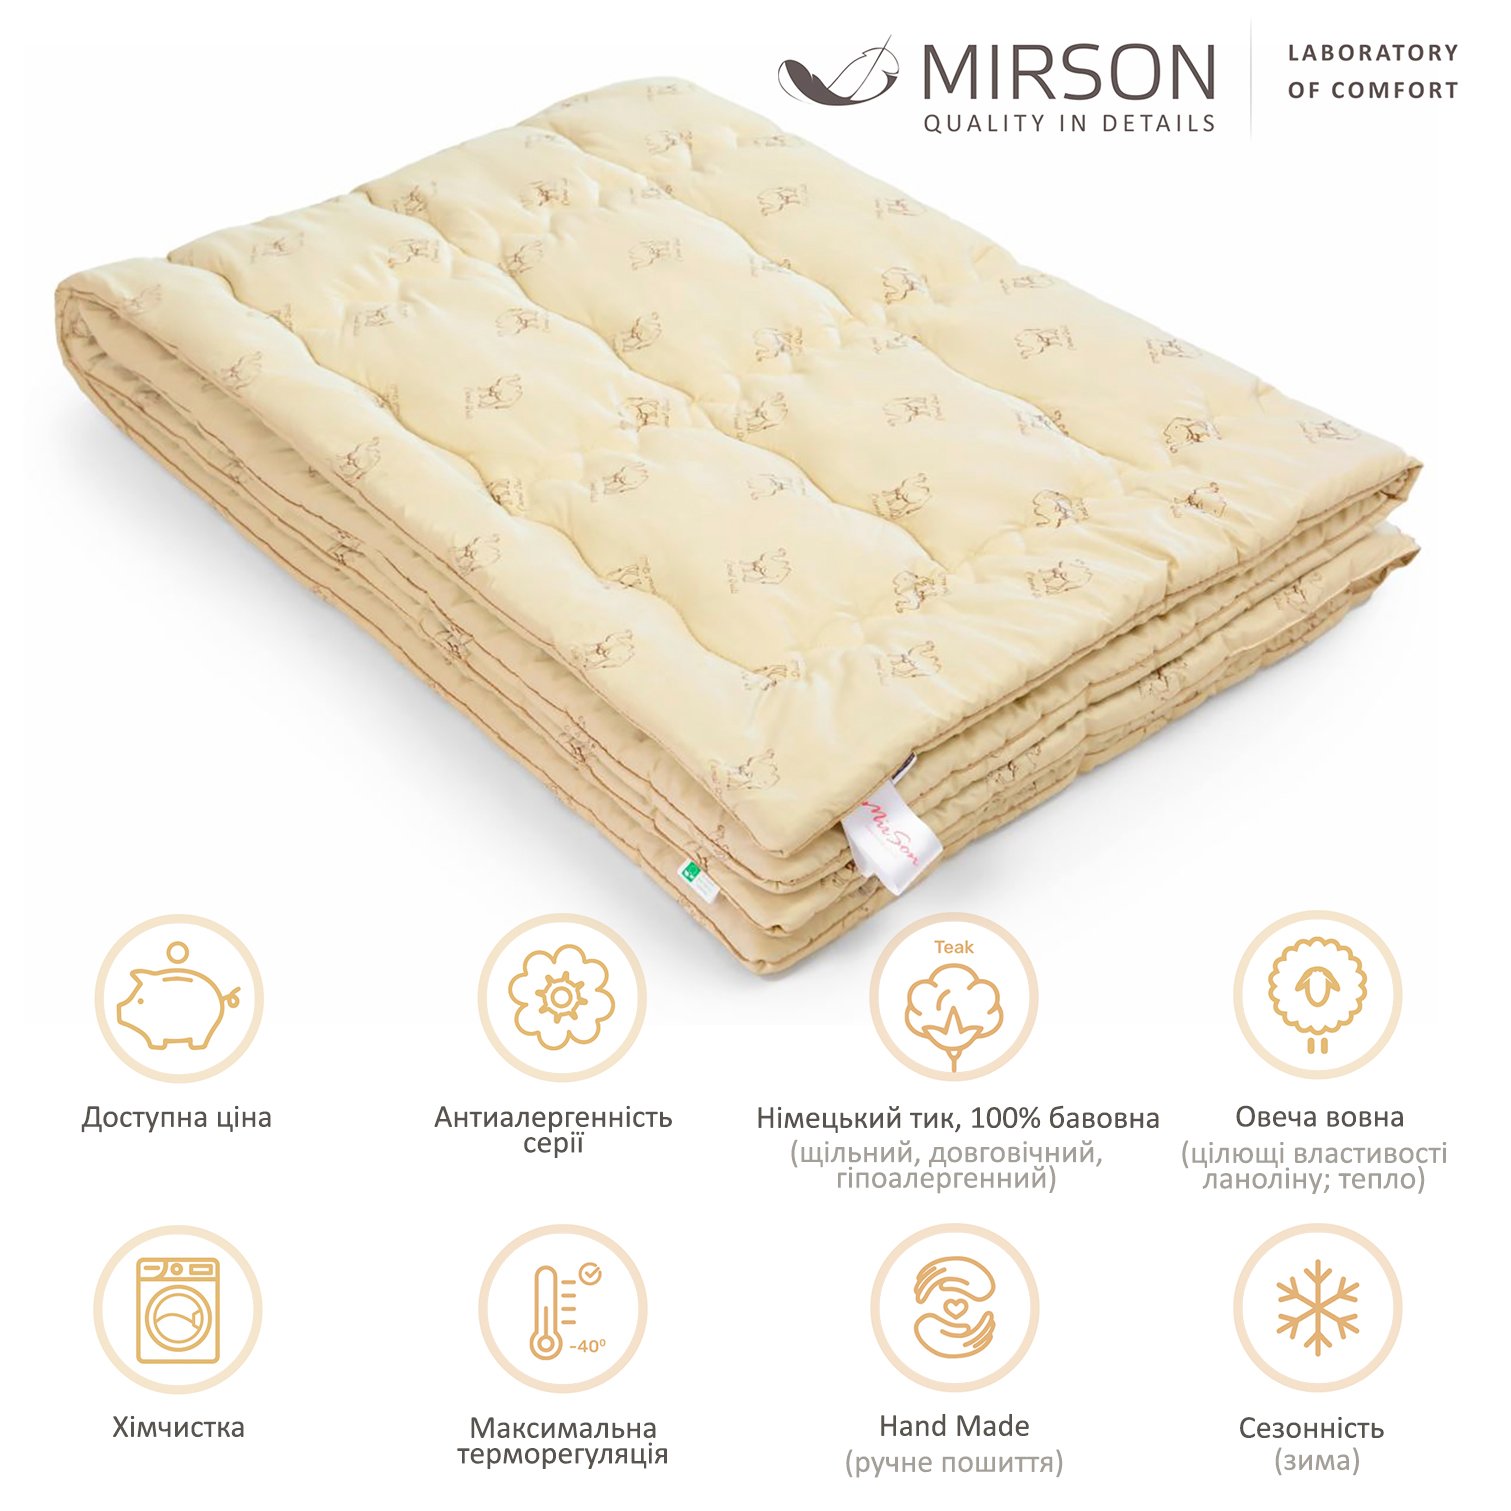 Одеяло шерстяное MirSon Gold Camel Hand Made №175, зимнее, 155x215 см, кремовое - фото 4